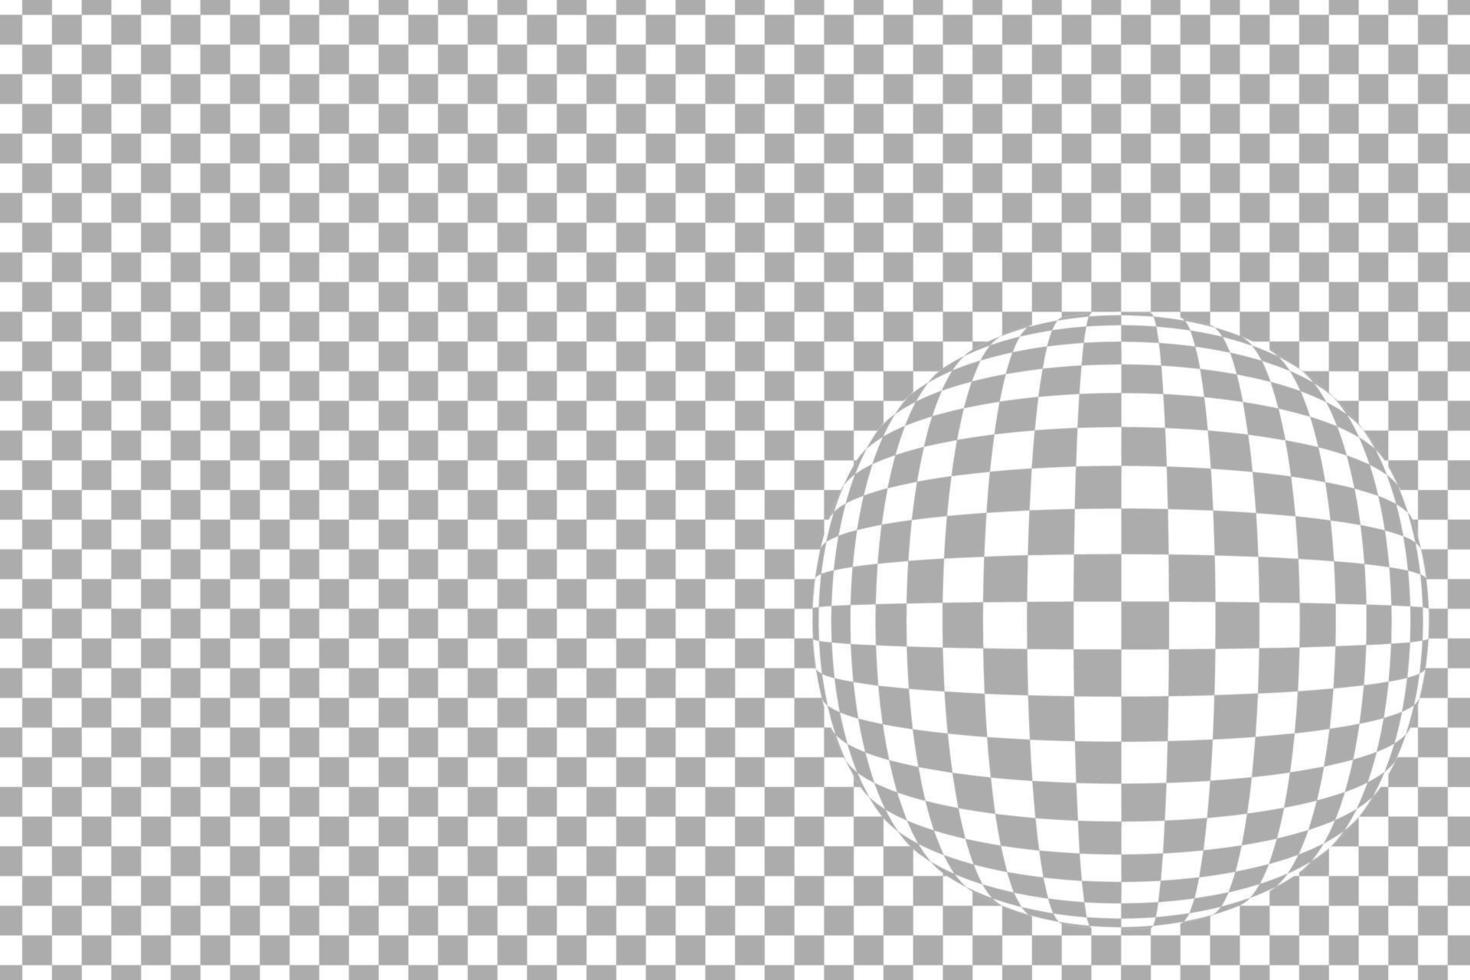 patrón de cuadros grises horizontales con efecto de lente ojo de pez, ilustración vectorial vector